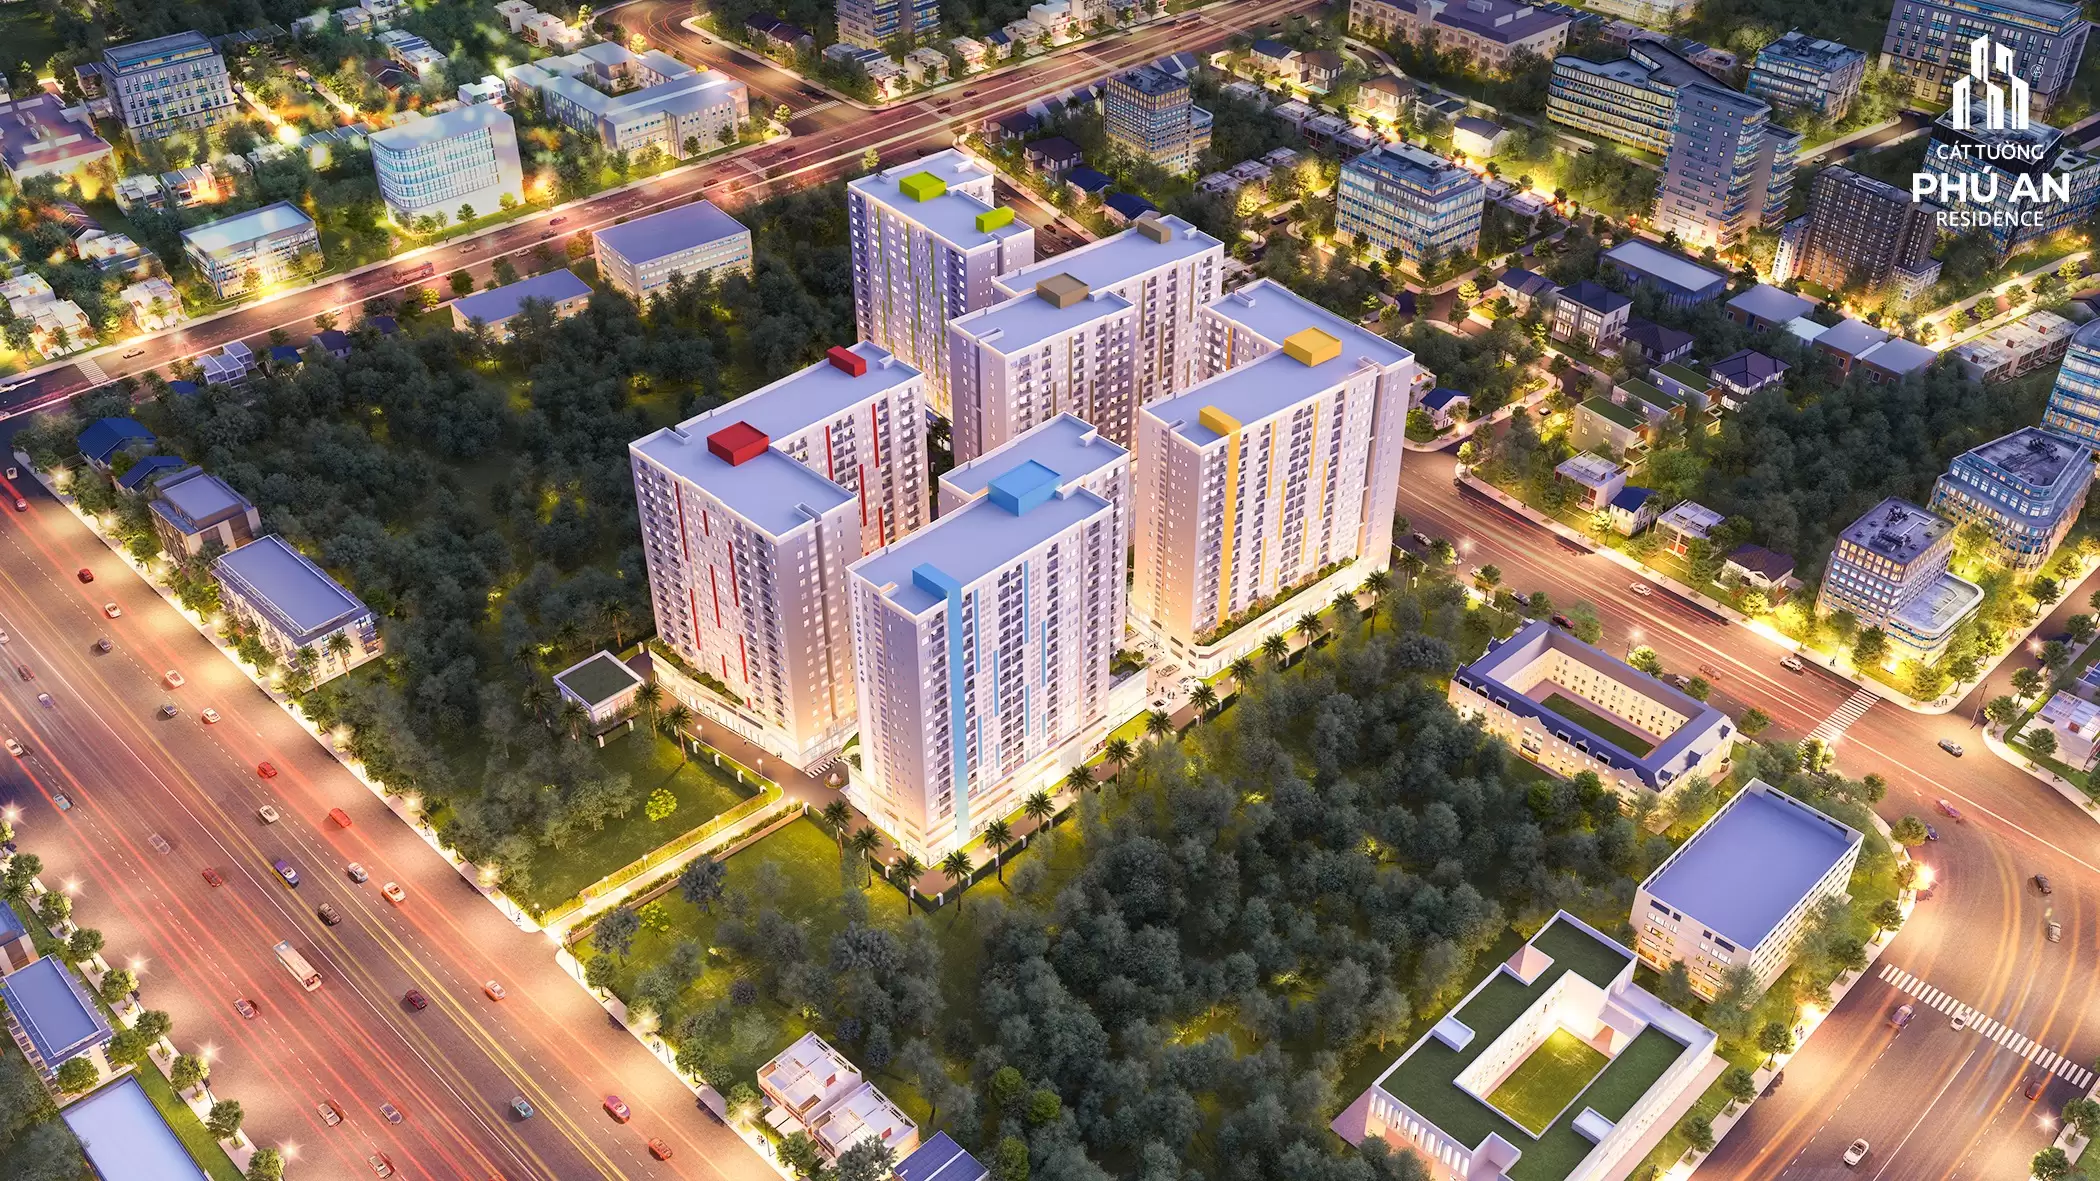 Dự án căn hộ Cát Tường Phú An Residence - Thông tin chính thống